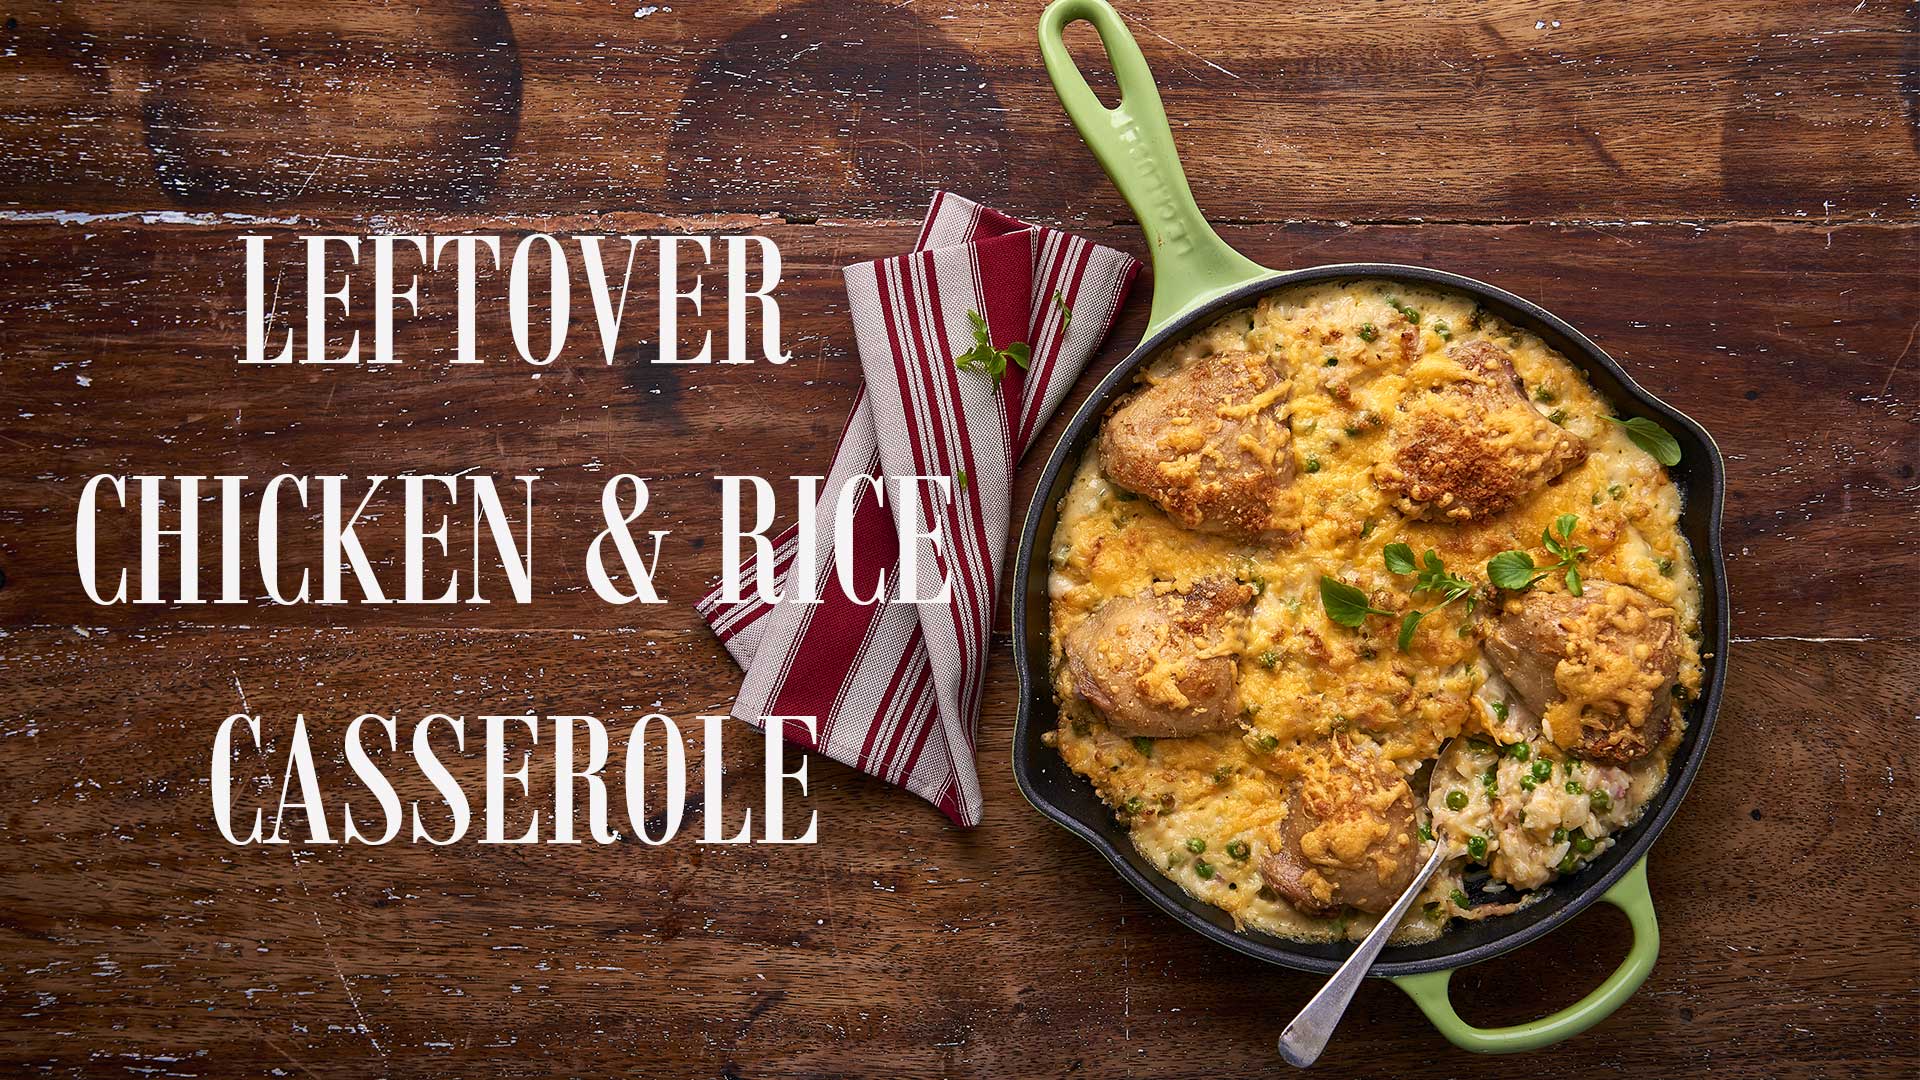 Leftover chicken and rice casserole winter recipe